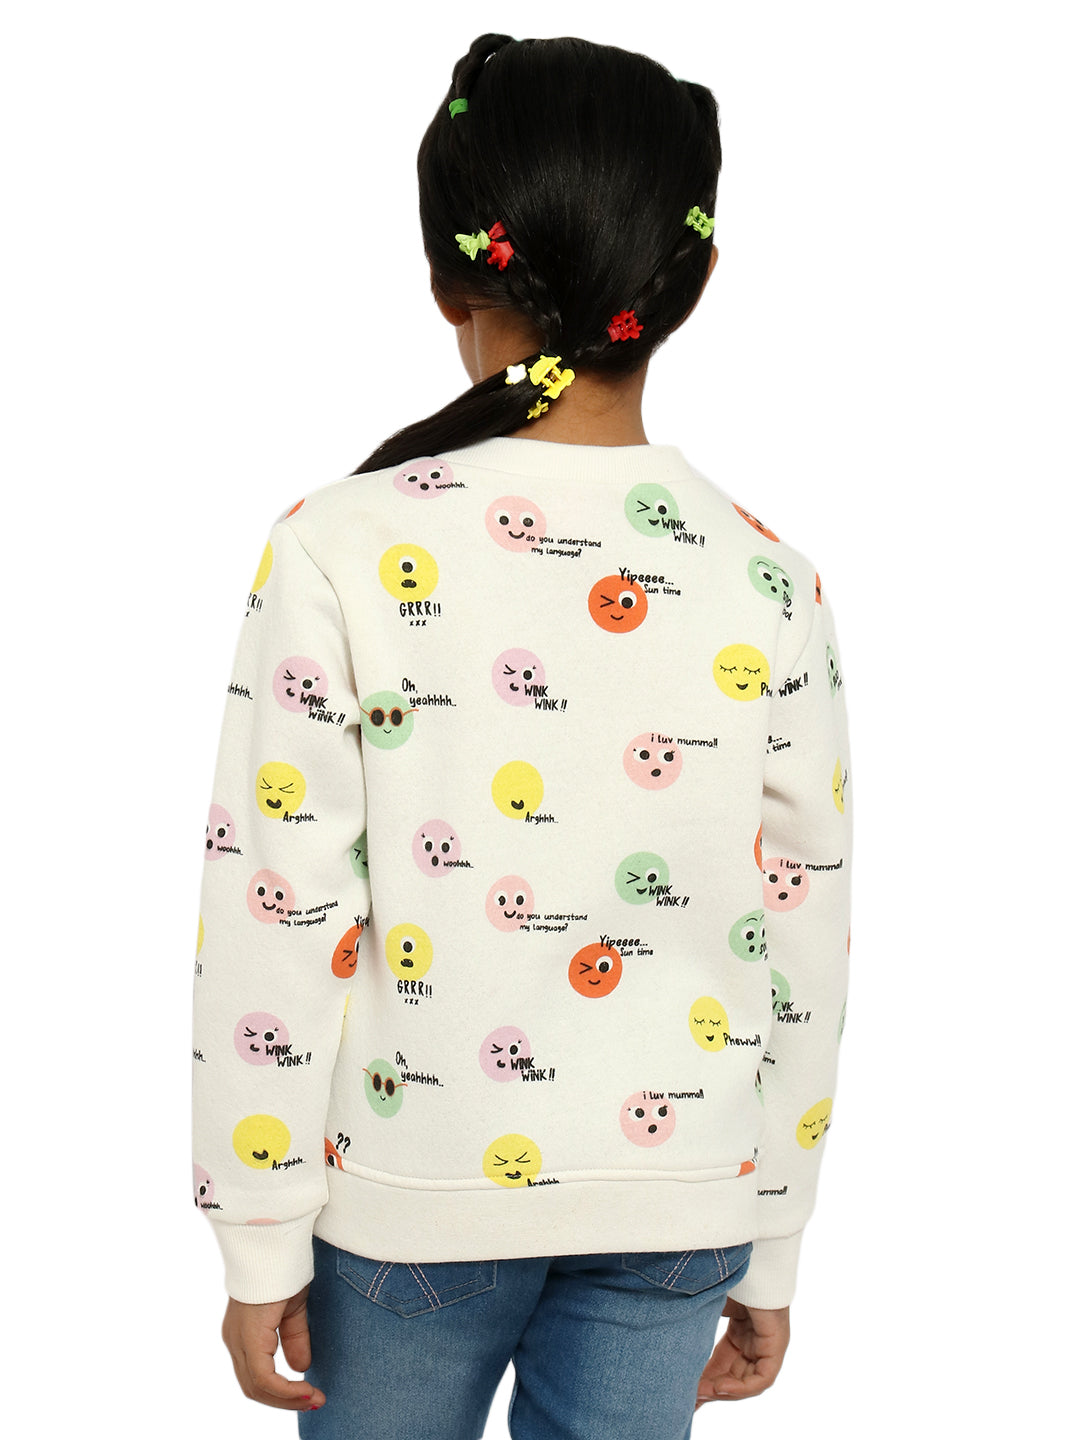 Nautinati Girls Conversational Printed Sweatshirt